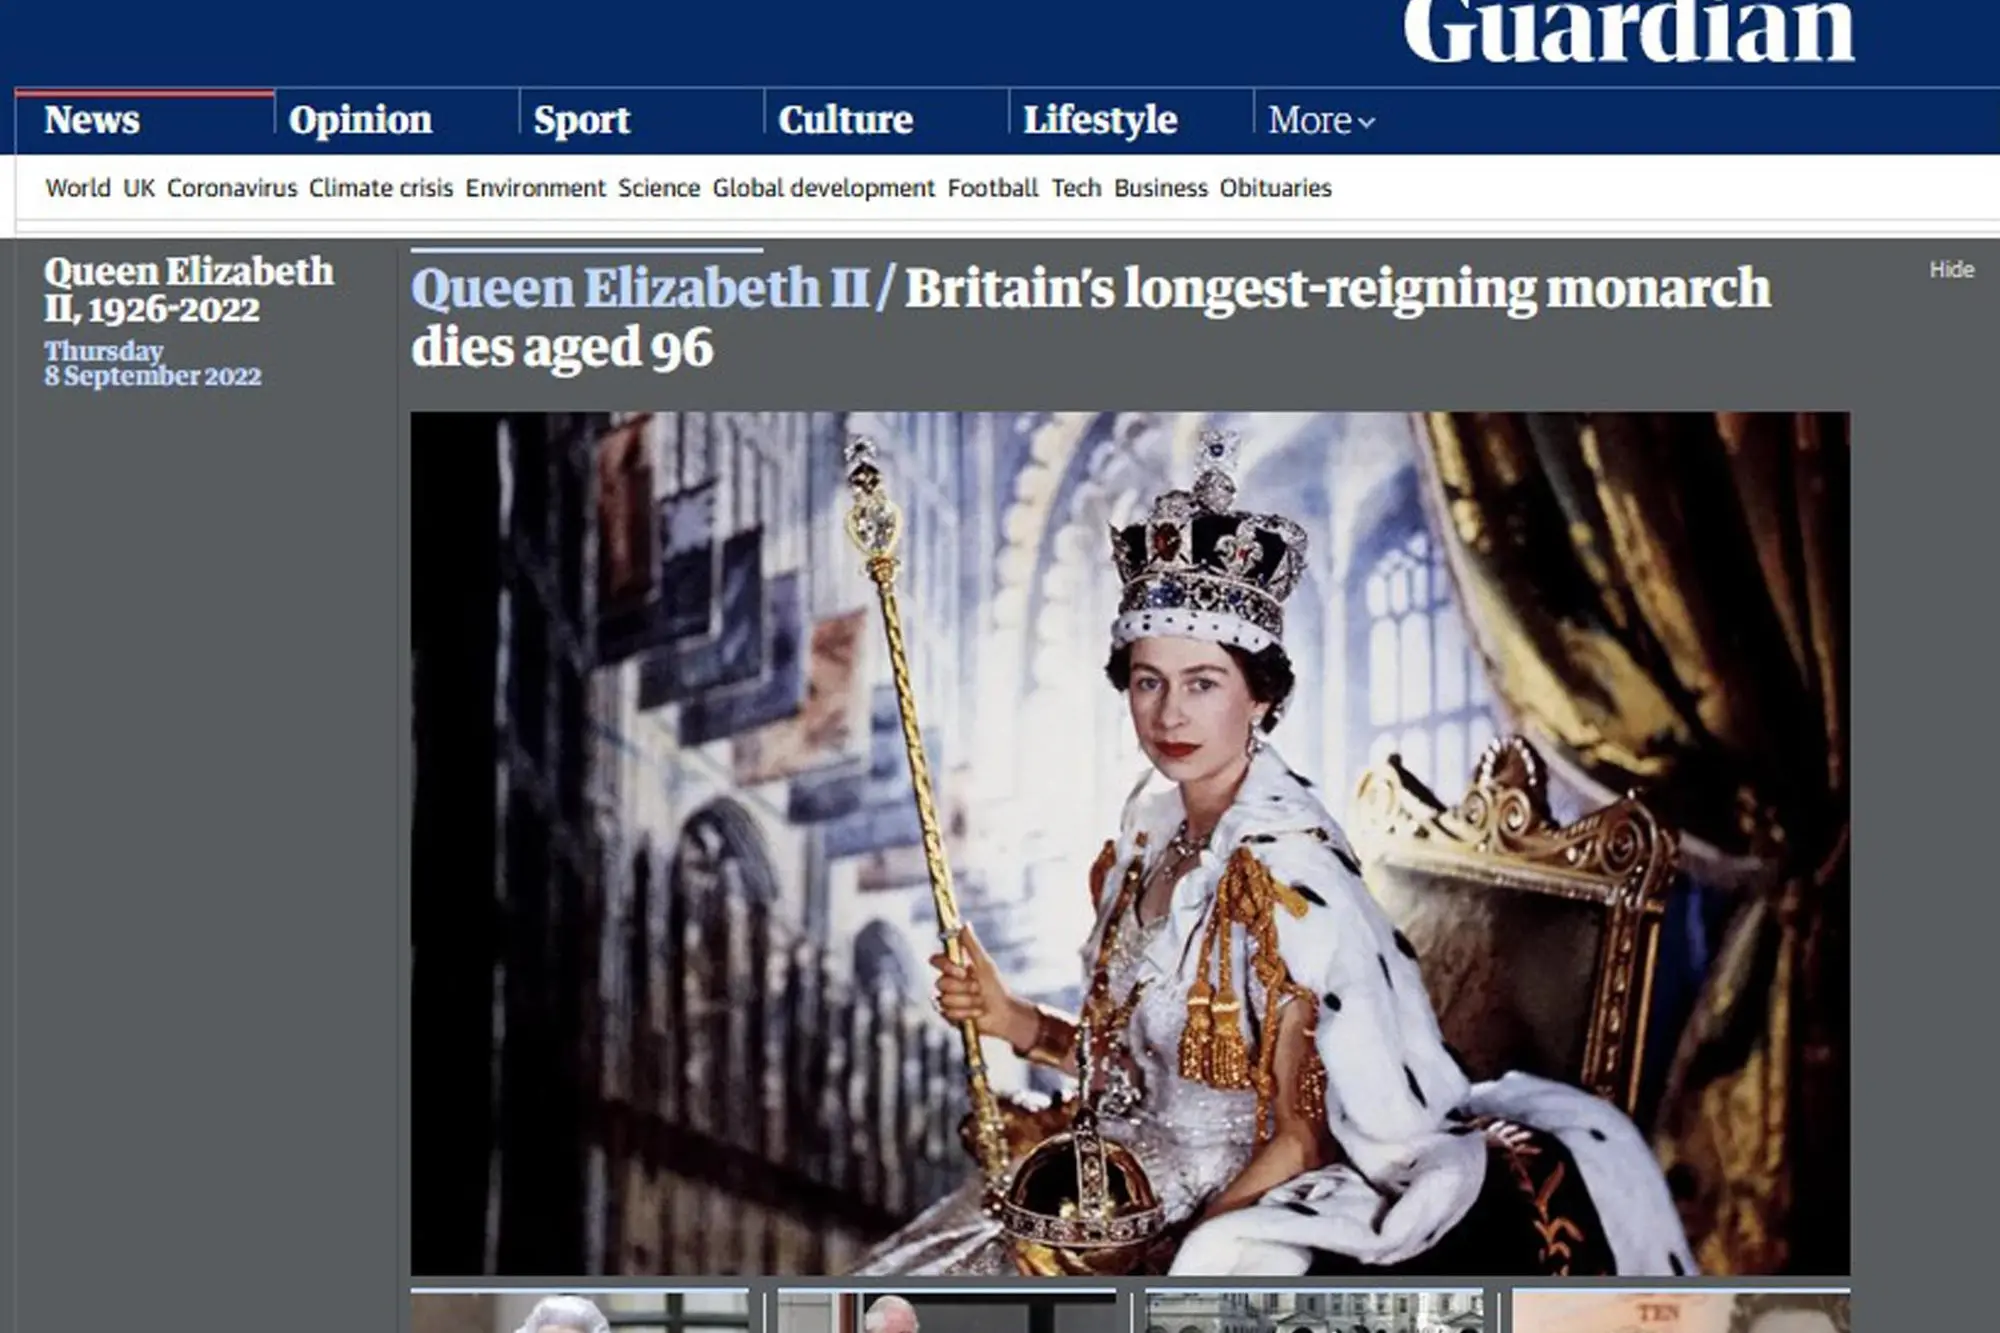 La regina Elisabetta è morta, la notizia sui siti di tutto il mondo, 8 settembre 2022. ANSA/The Guardian